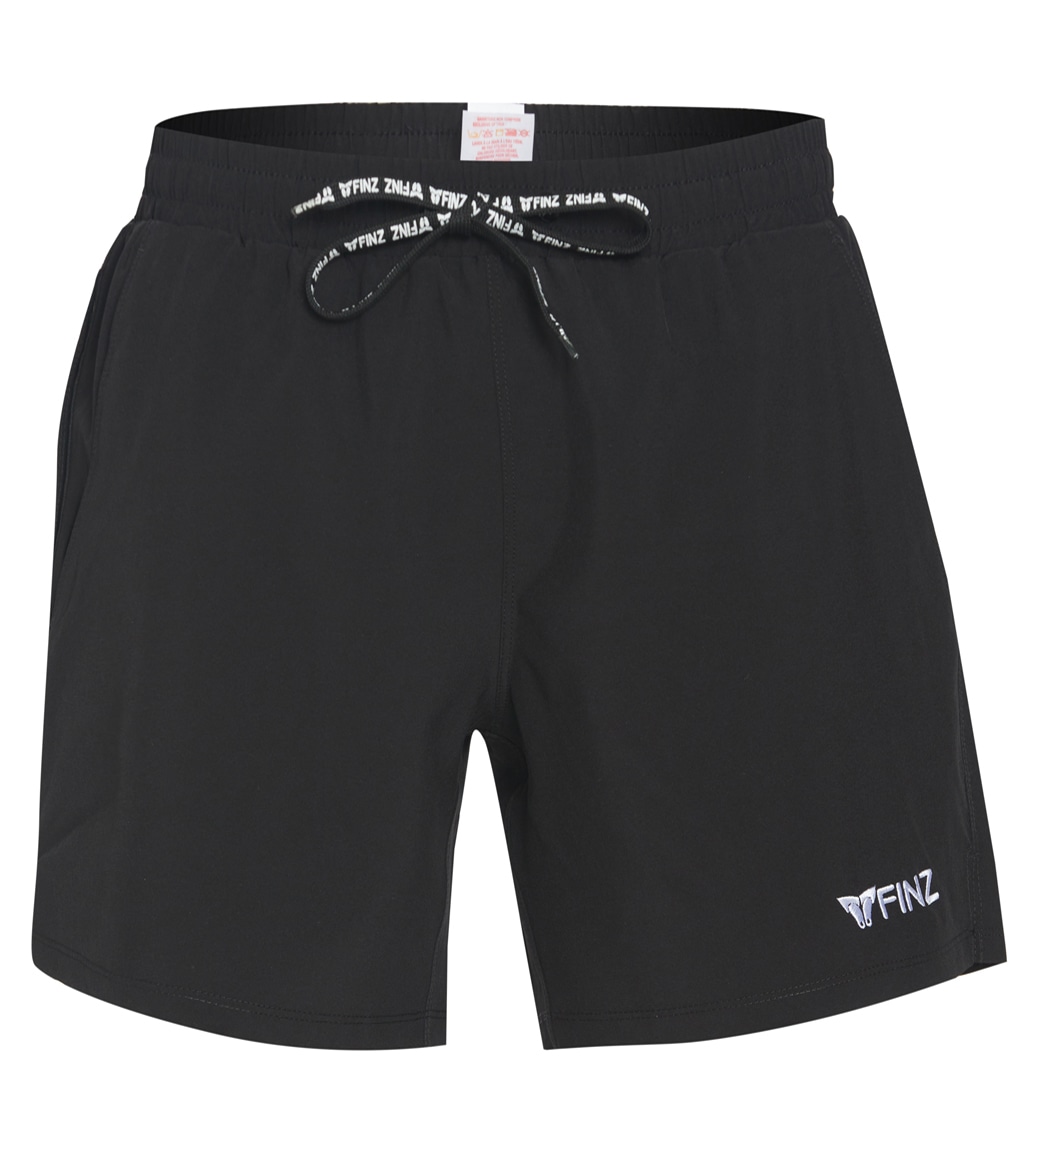 Finz Men's Beach Shorts - Black Large - Swimoutlet.com